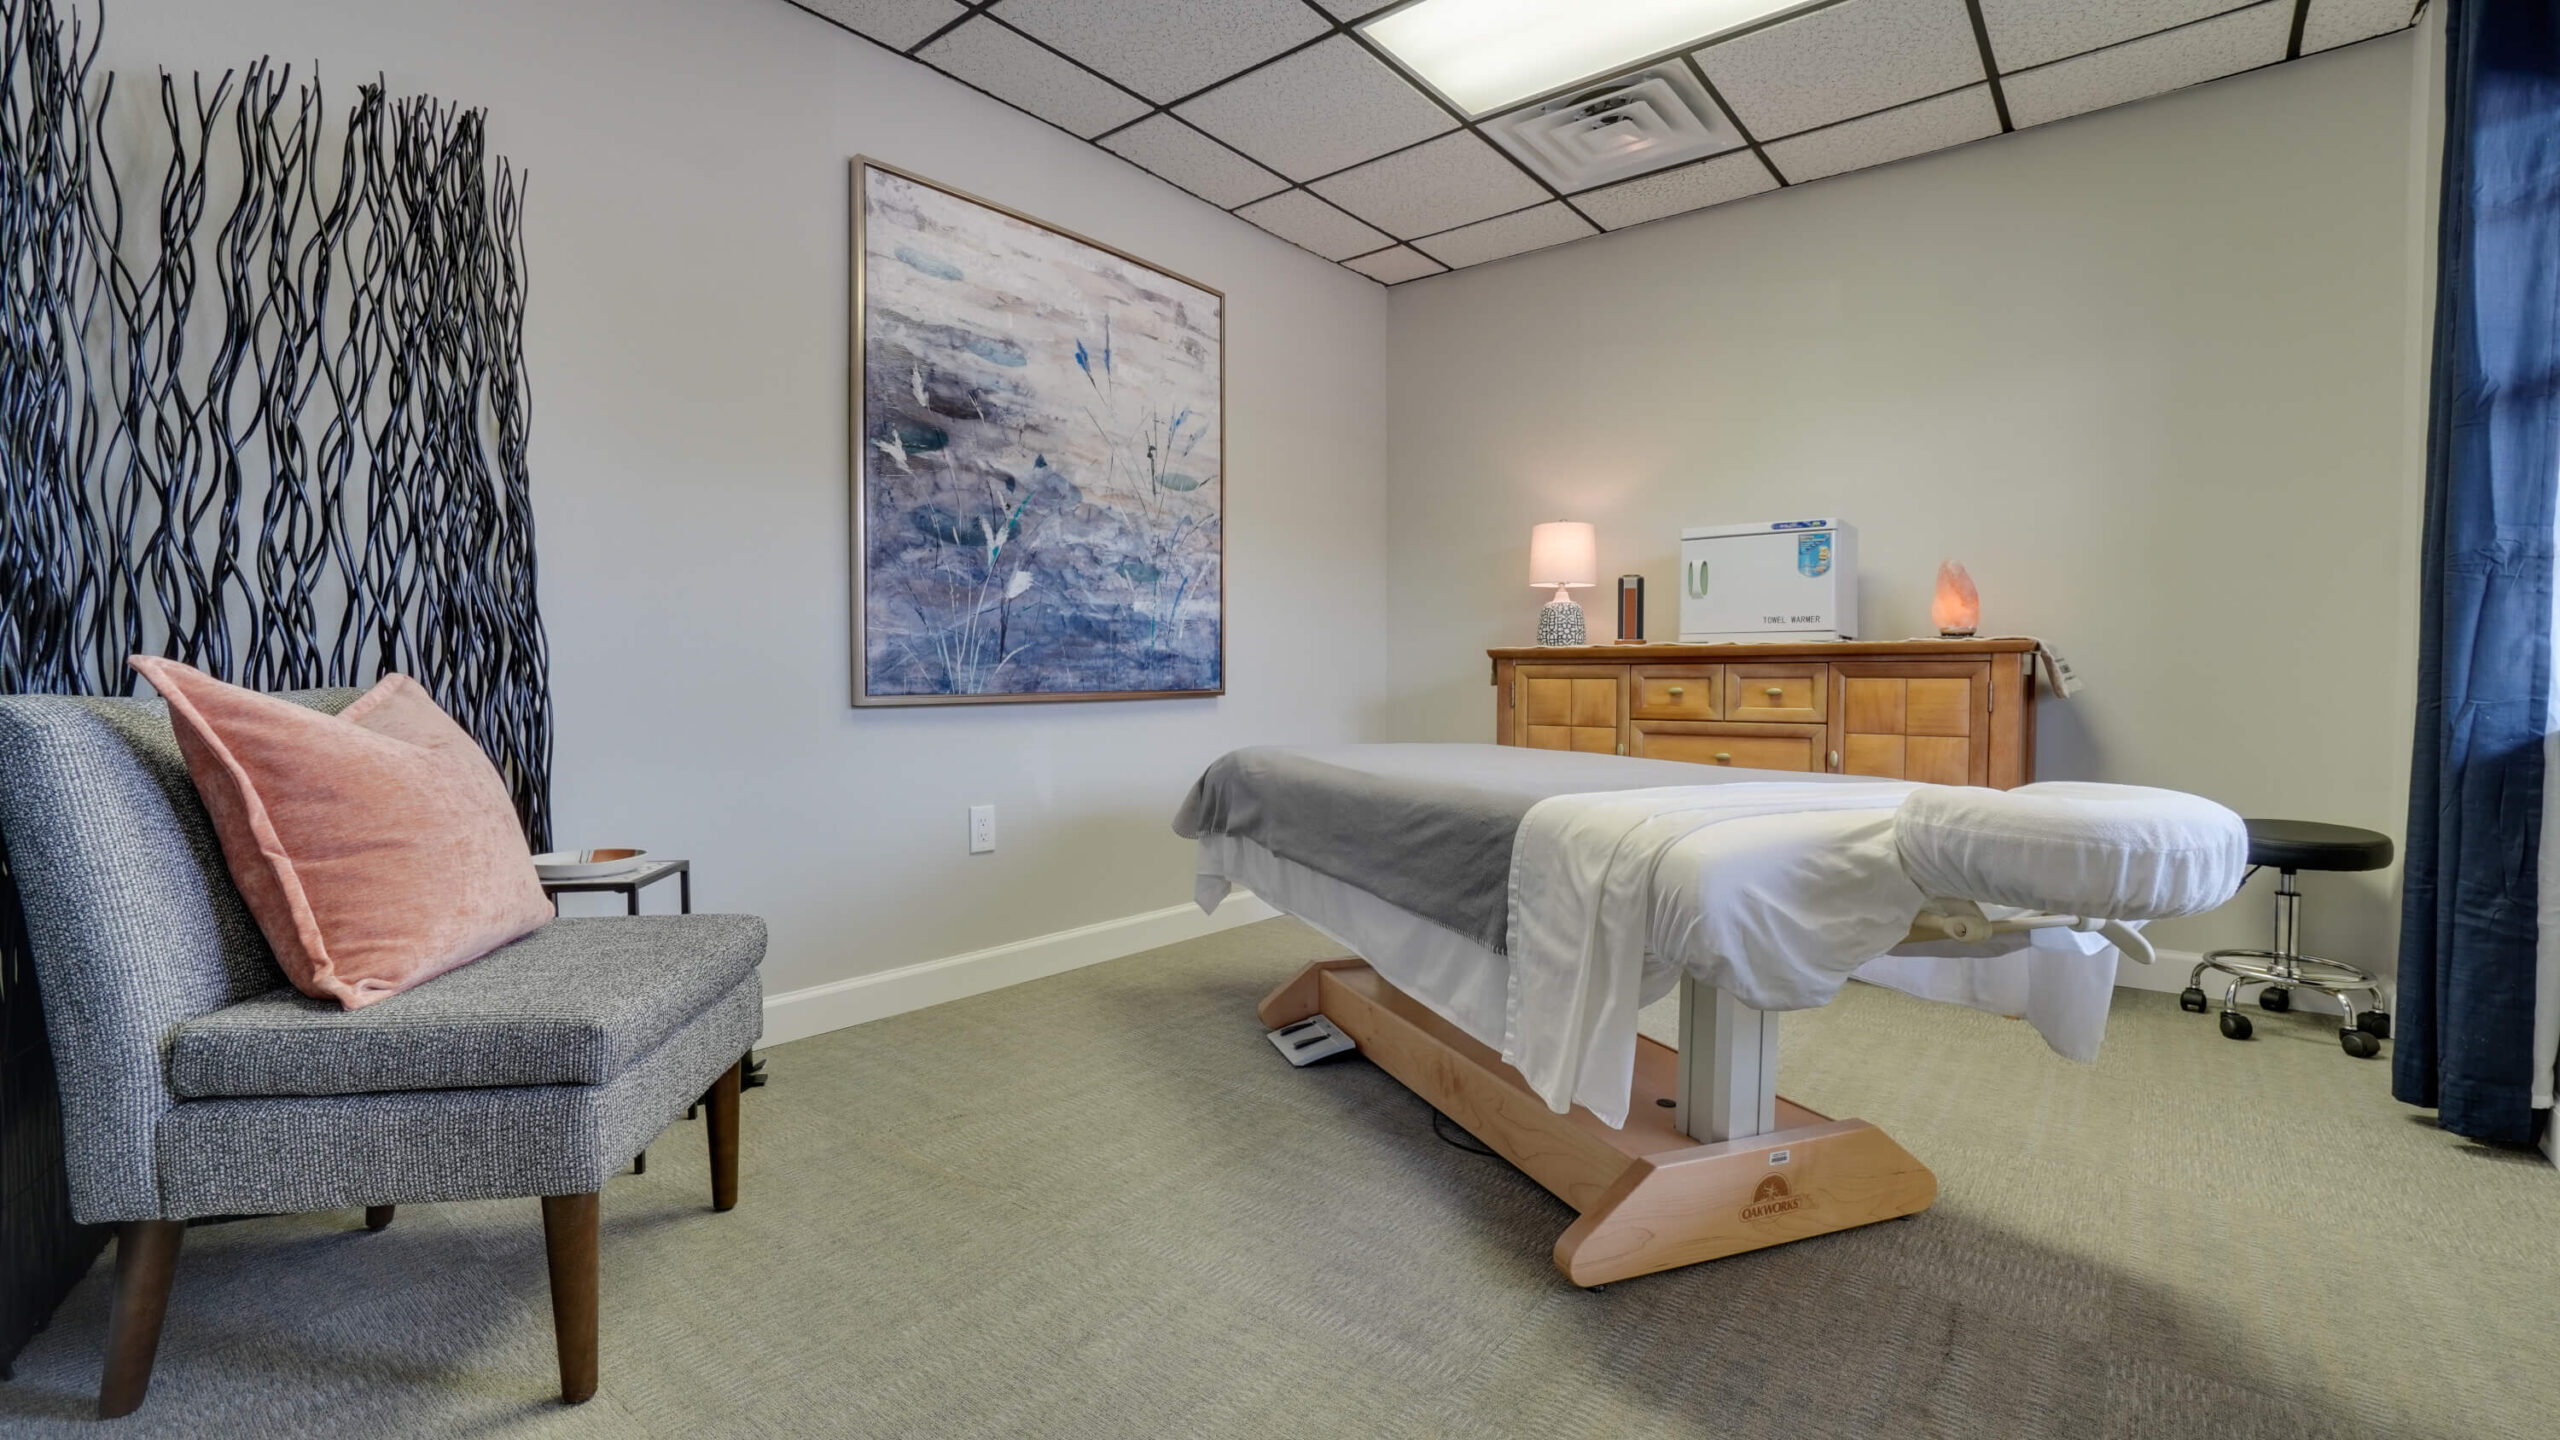 The Art of Massage Room 3